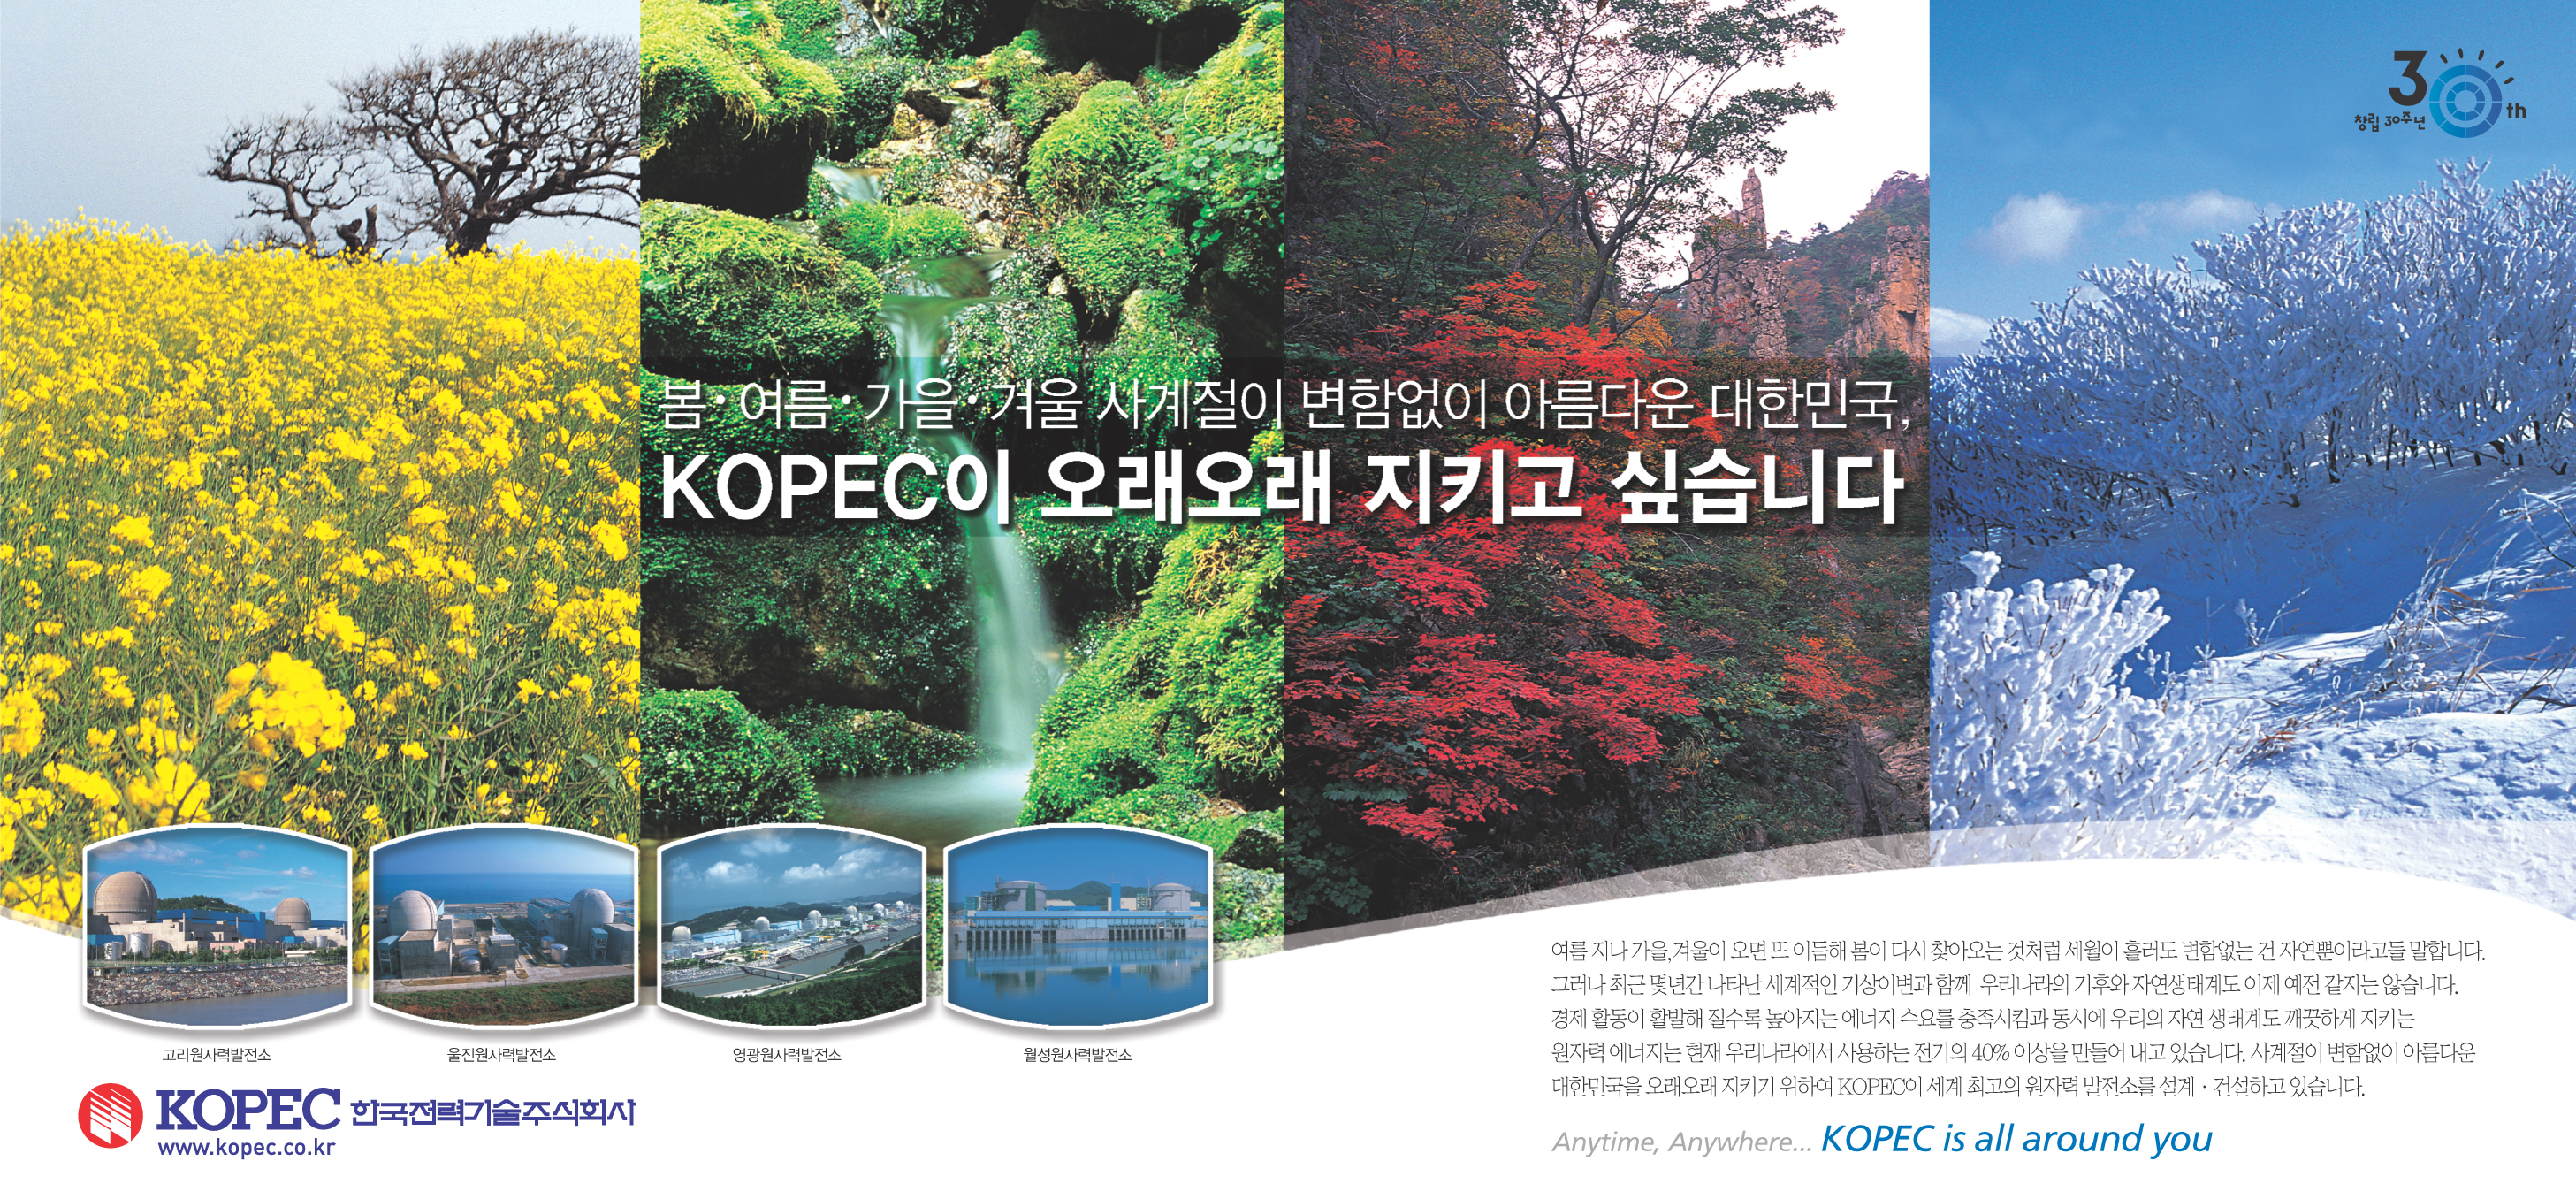 사계절이 변함없이 아름다운 대한민국 KOPEC이 오래오래 지키고 싶습니다.